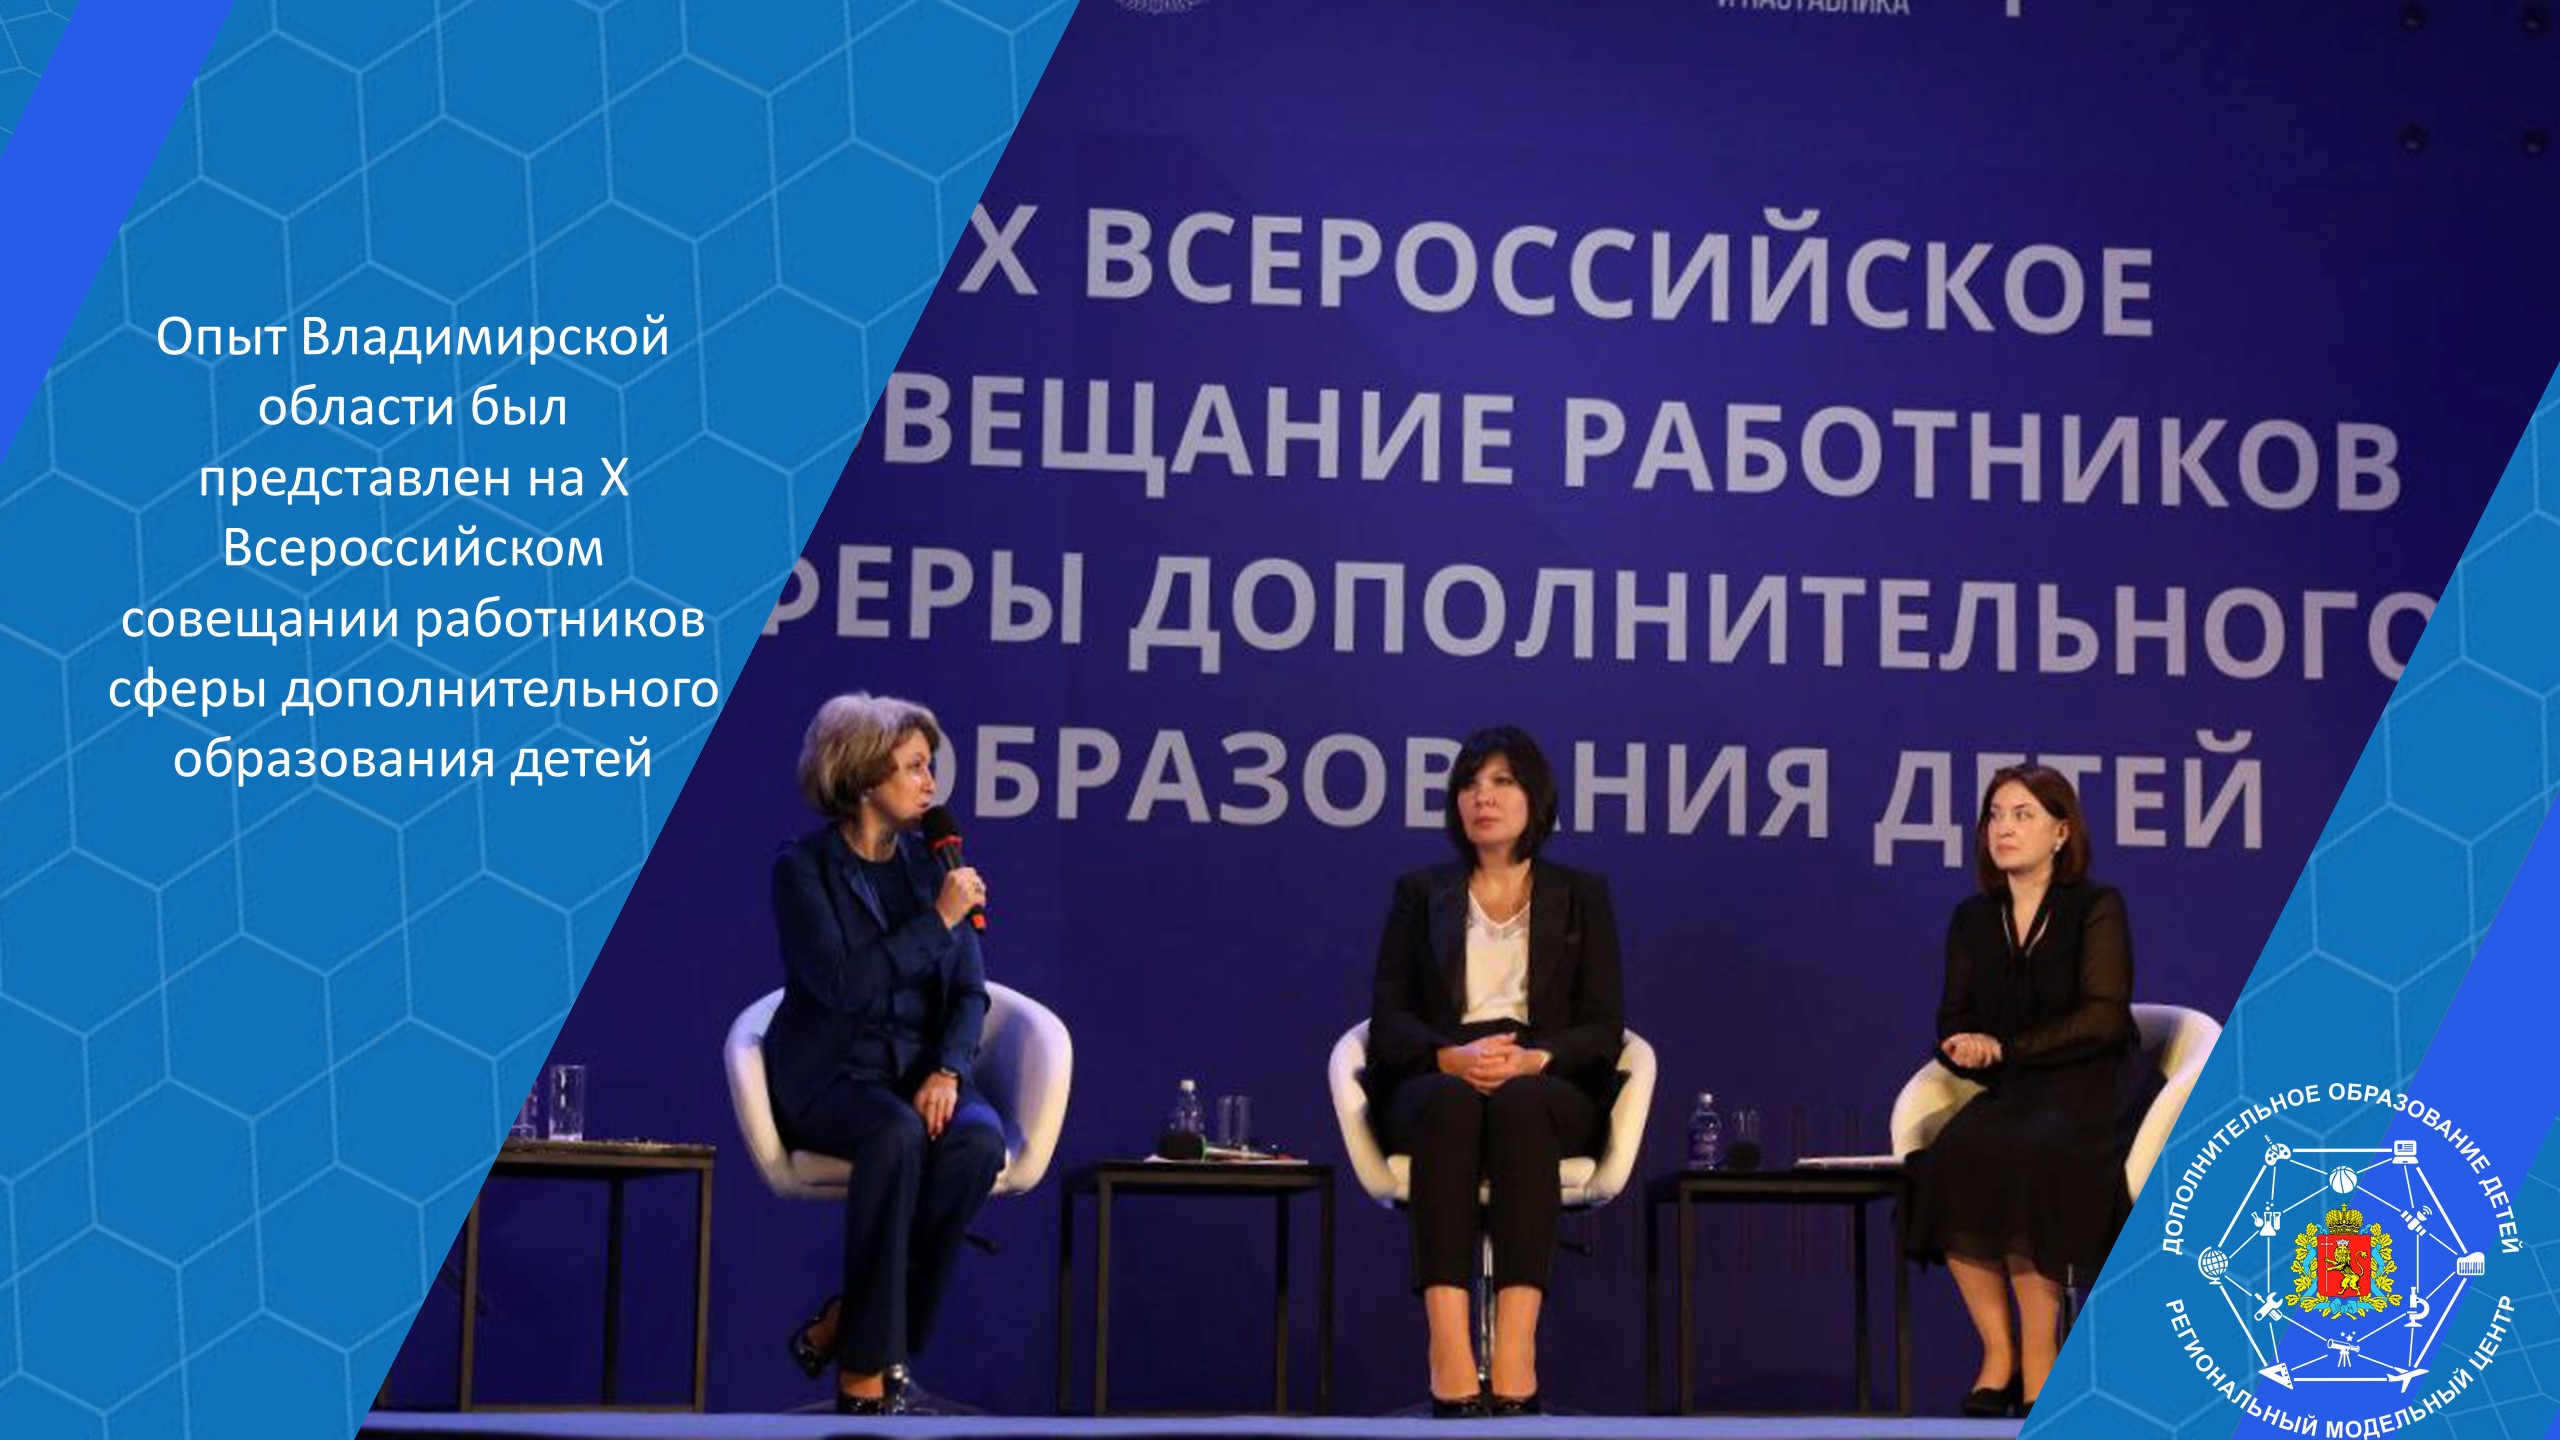 Опыт Владимирской области был представлен на X Всероссийском совещании работников сферы дополнительного образования детей